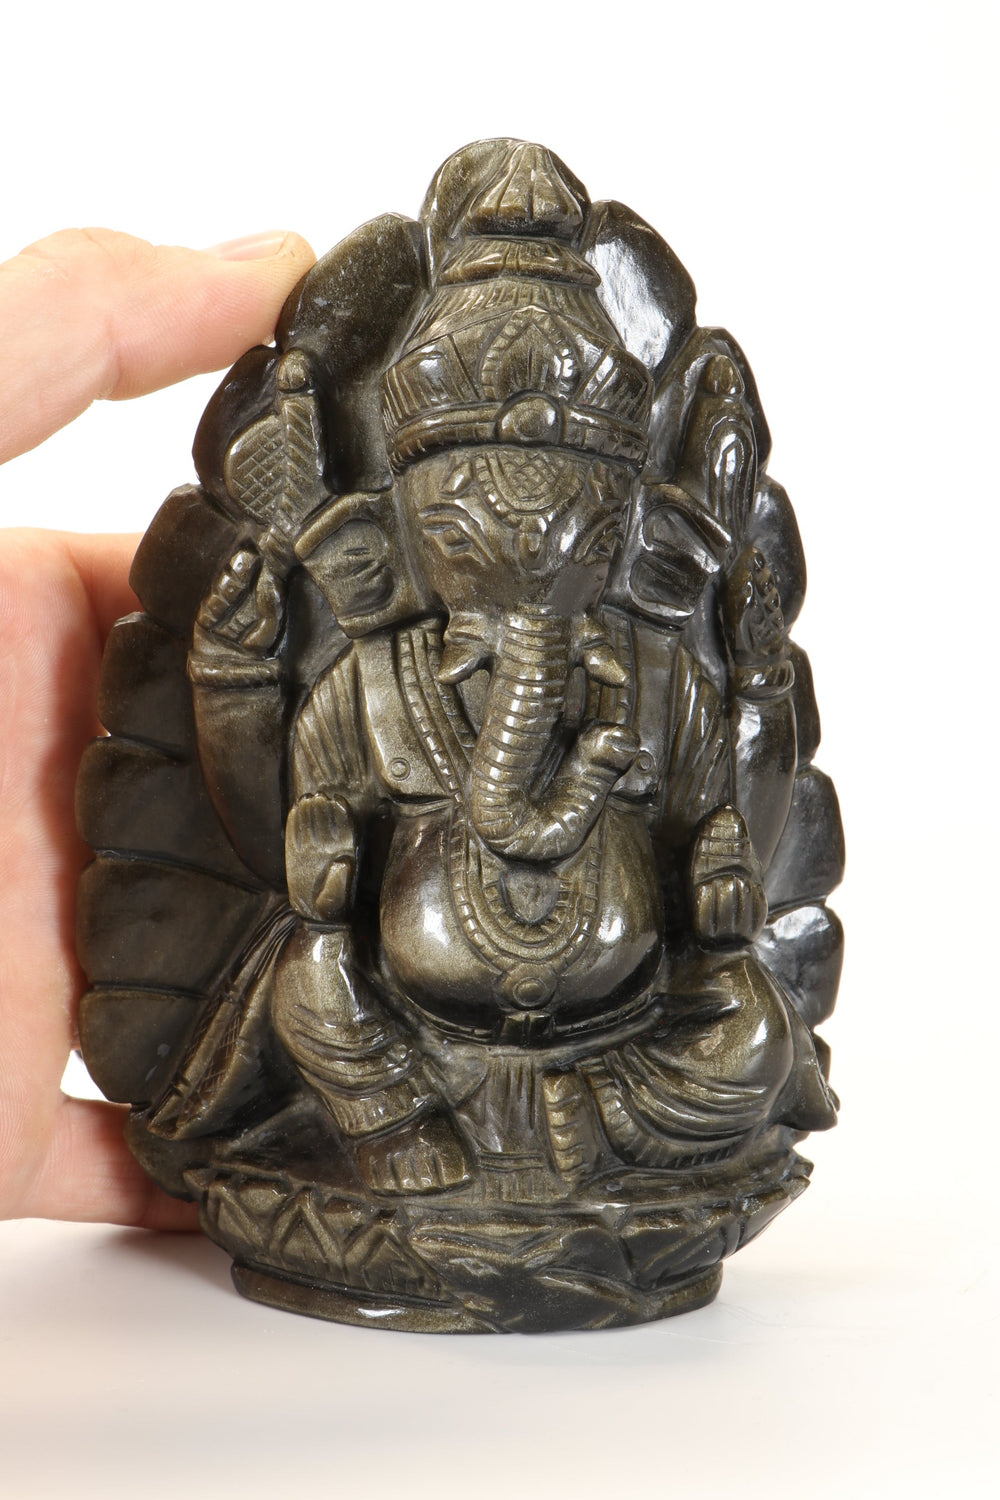 Gold Sheen Obsidian Ganesha Carving TD3451